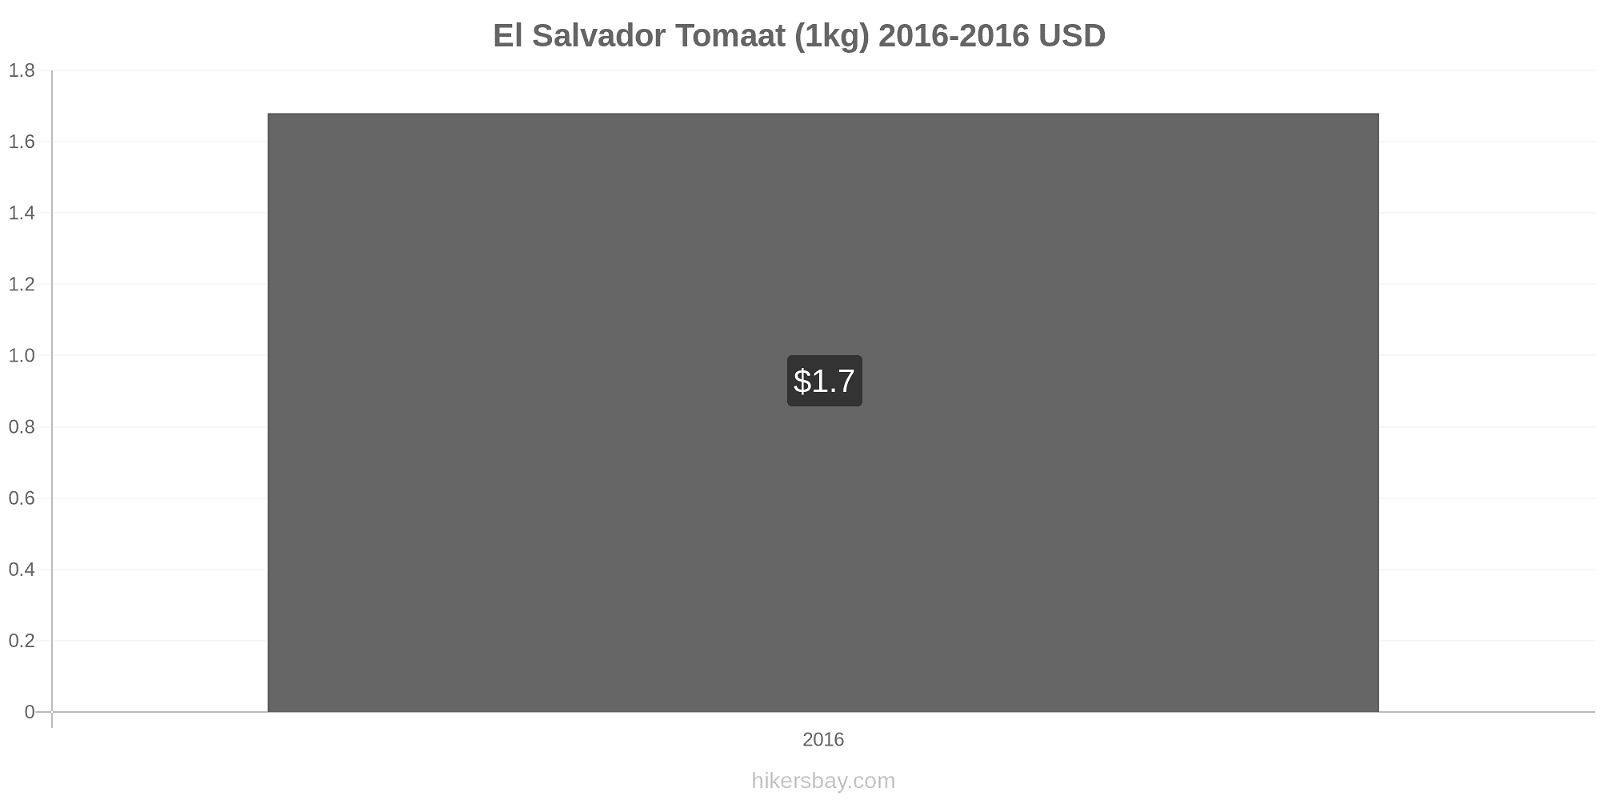 El Salvador prijswijzigingen Tomaat (1kg) hikersbay.com